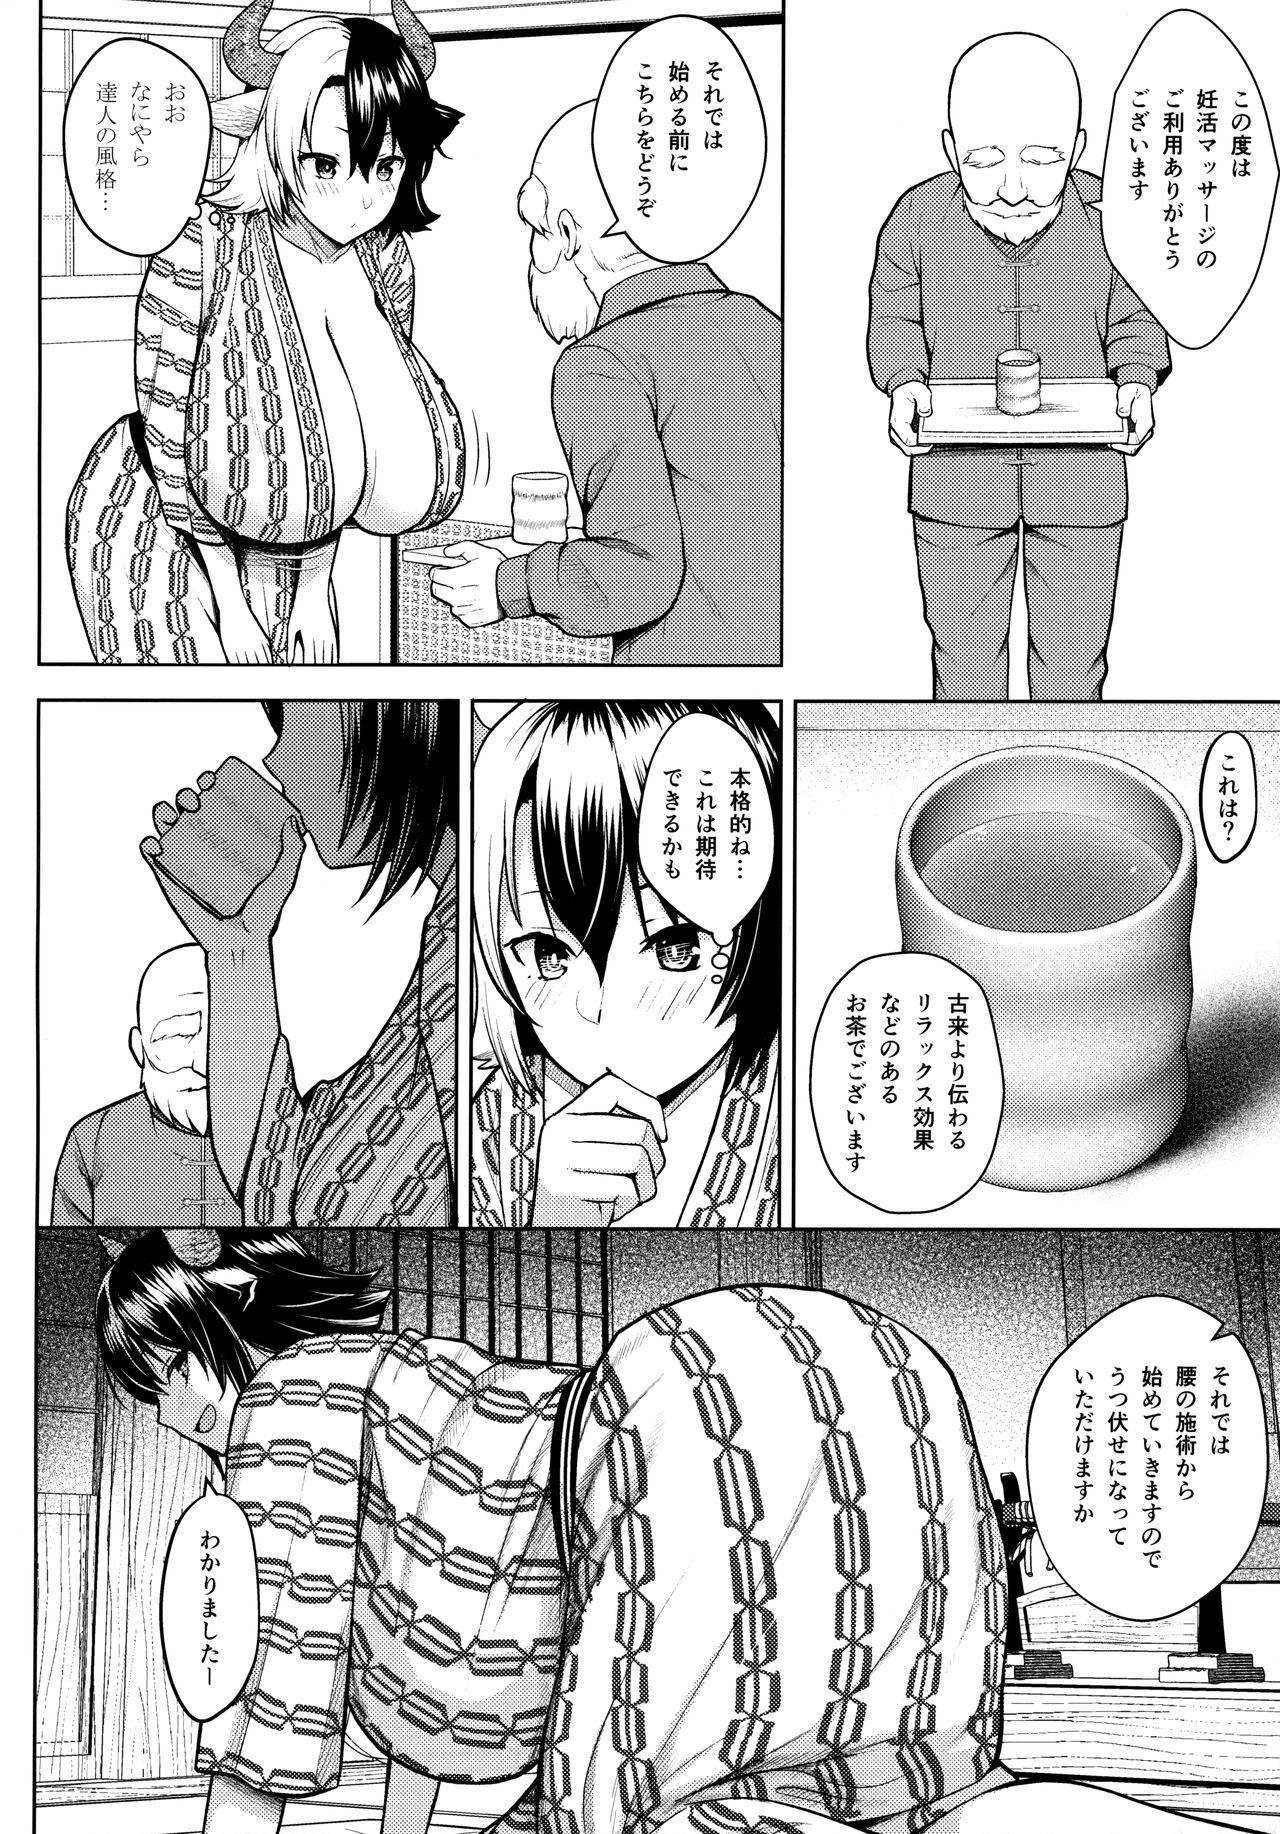 Satin Oku-san no Oppai ga Dekasugiru no ga Warui! 4 - Touhou project Real Orgasms - Page 7